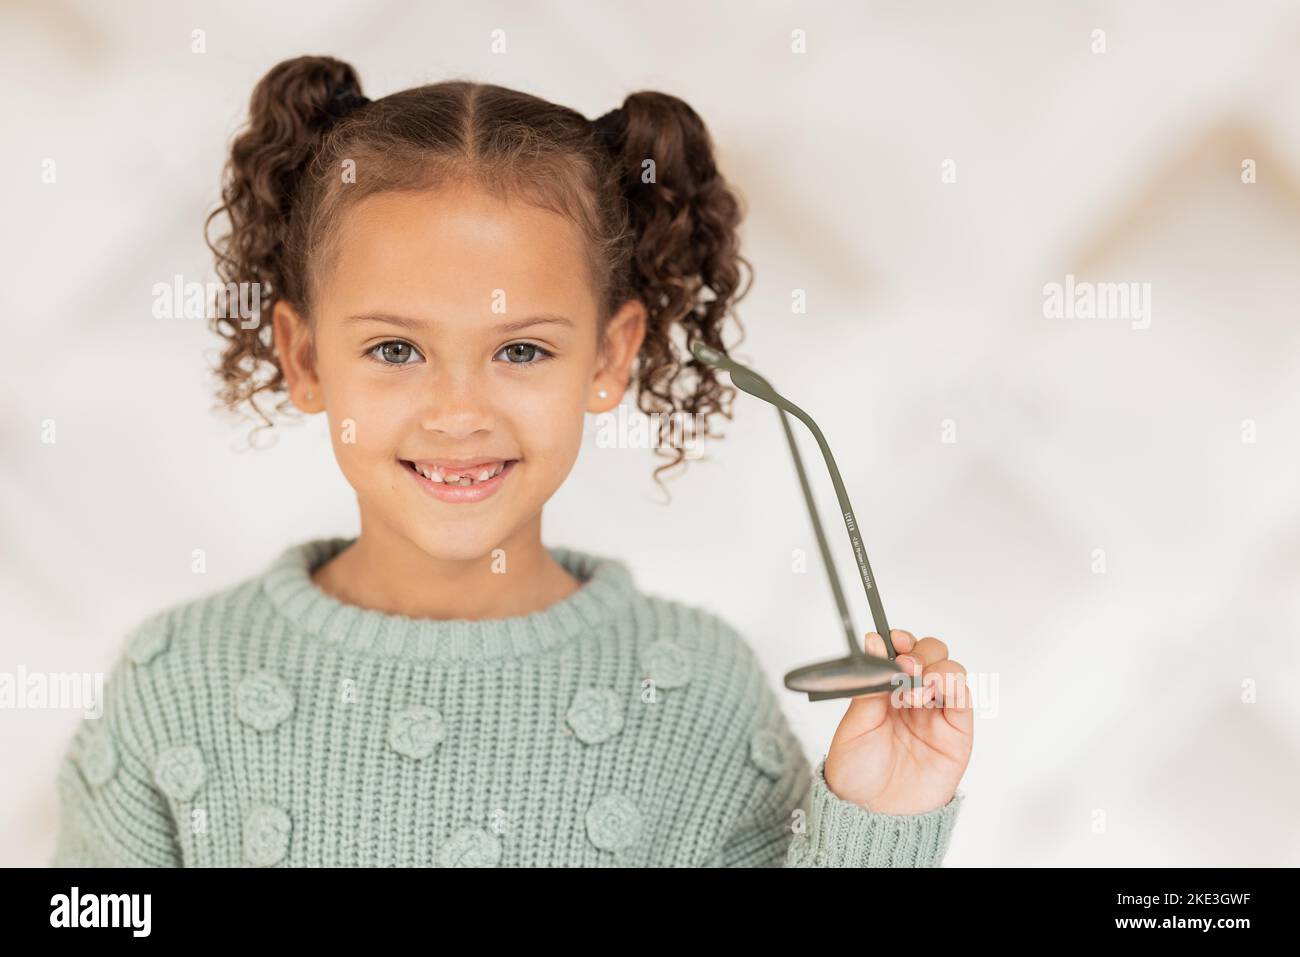 Brille, Porträt und Kind glücklich mit ihrer Vision Gesundheit, Augenpflege und Krankenversicherung für Kinder Optometrie Rabatt, Verkauf oder Promotion. Kind lächelt für Stockfoto